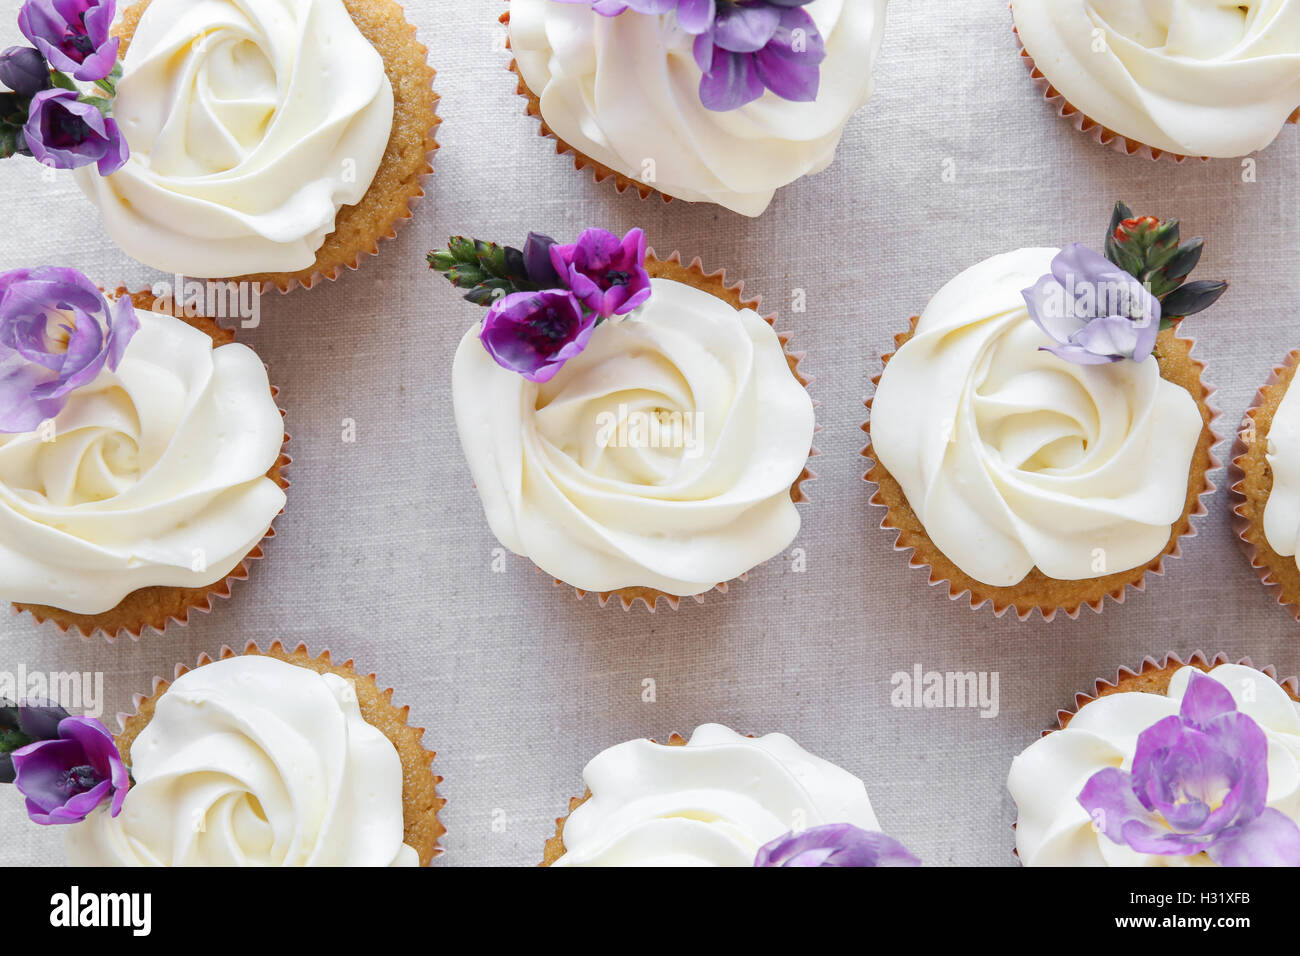 Rose Blume Zuckerguss Vanille Cupcakes mit lila essbare Blumen Stockfoto